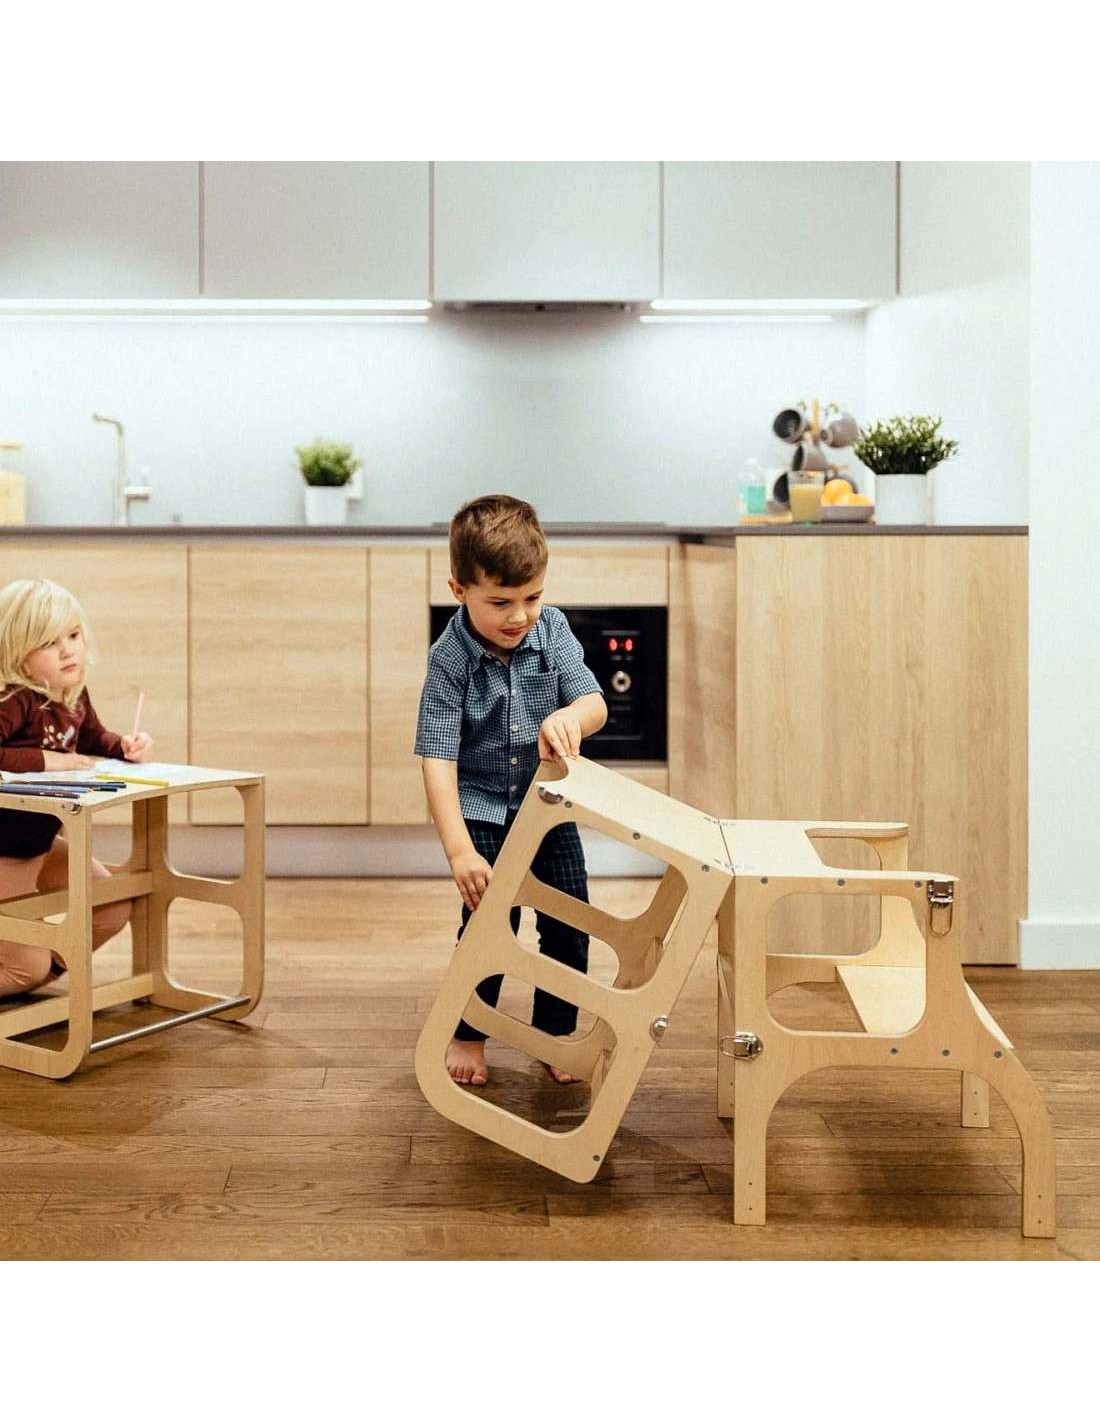 Torre de Aprendizaje Montessori de madera para niños